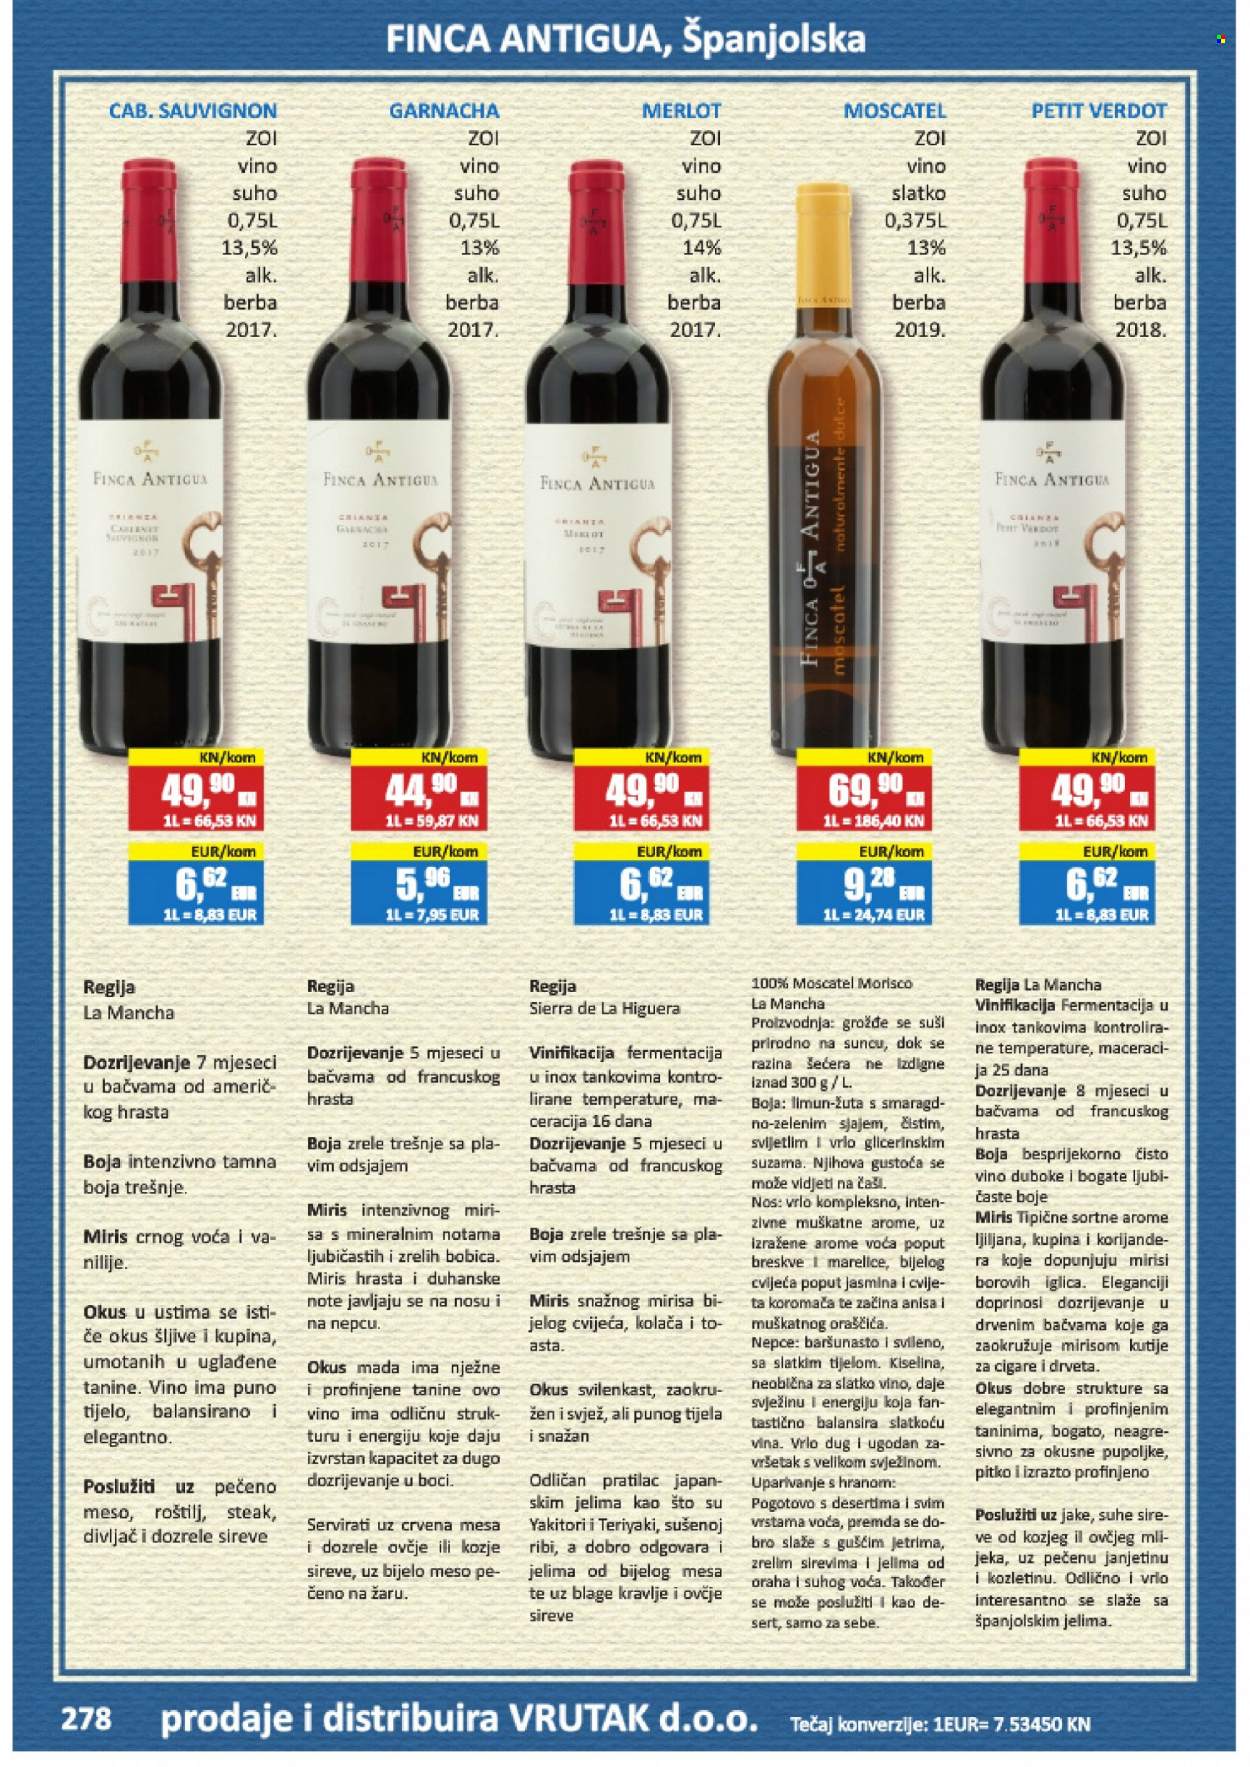 thumbnail - Vrutak katalog - Sniženi proizvodi - breskva, marelica, DOBRO, crno vino, garnacha, Merlot, Moscatel, vino, alkohol, Sierra. Stranica 278.